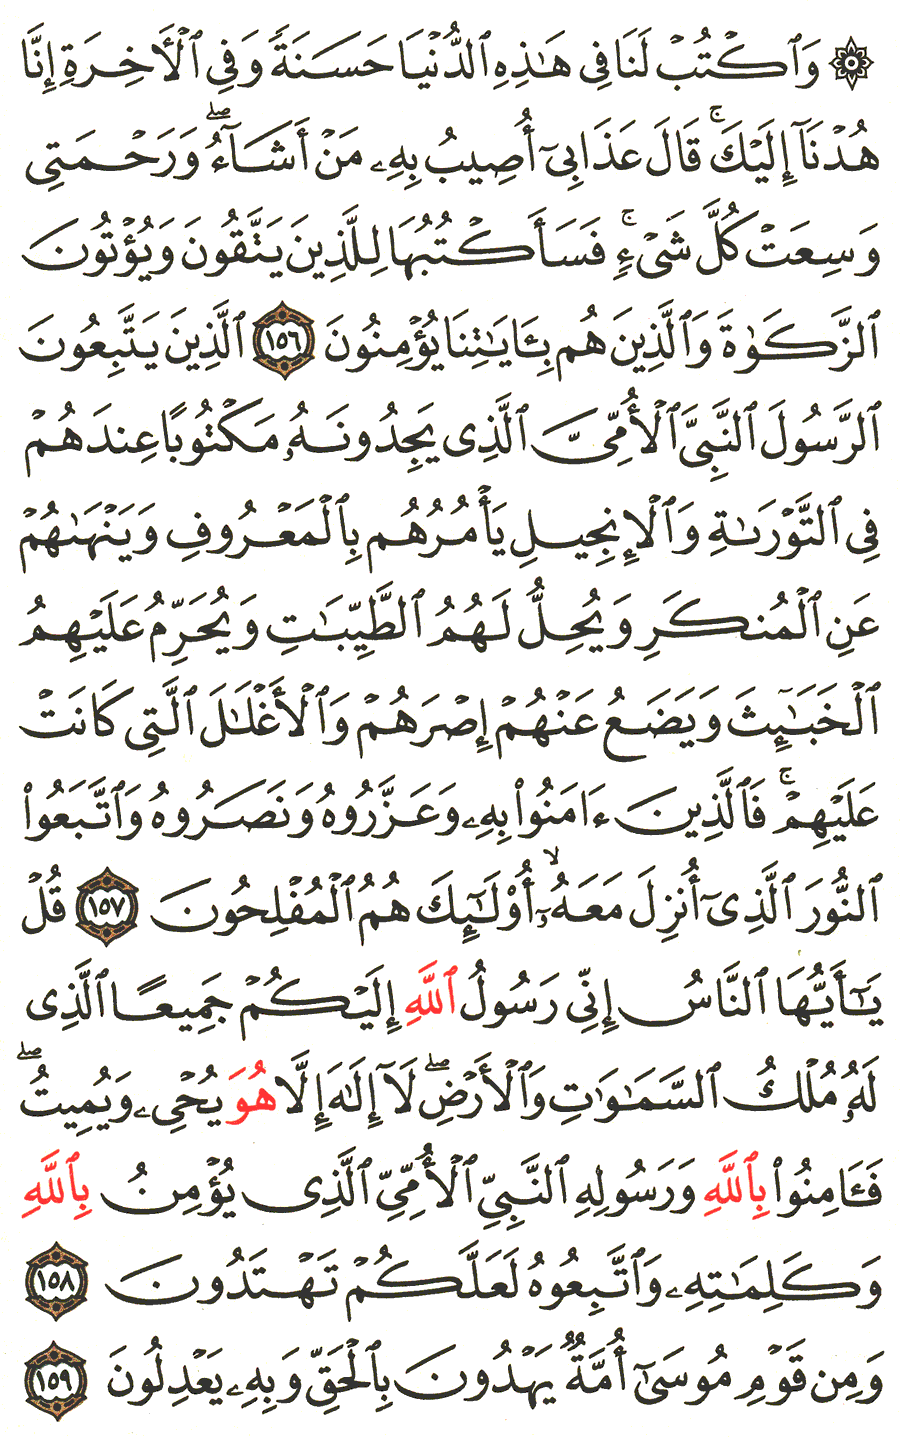 الصفحة رقم 170 من القرآن الكريم مكتوبة من المصحف